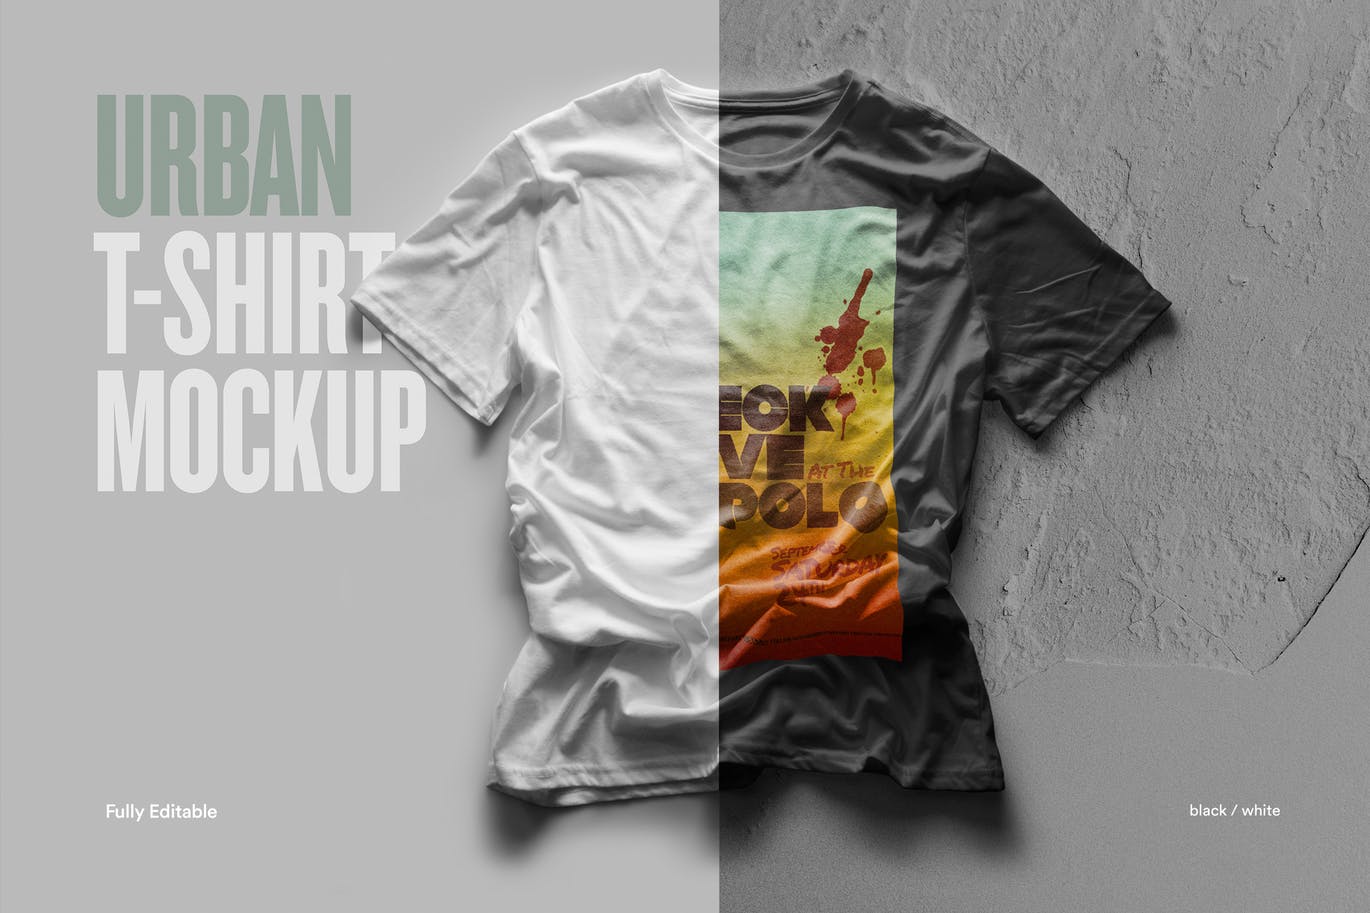 都市风格T恤印花图案设计预览样机第一素材精选 Urban T-Shirt Mock-Up插图